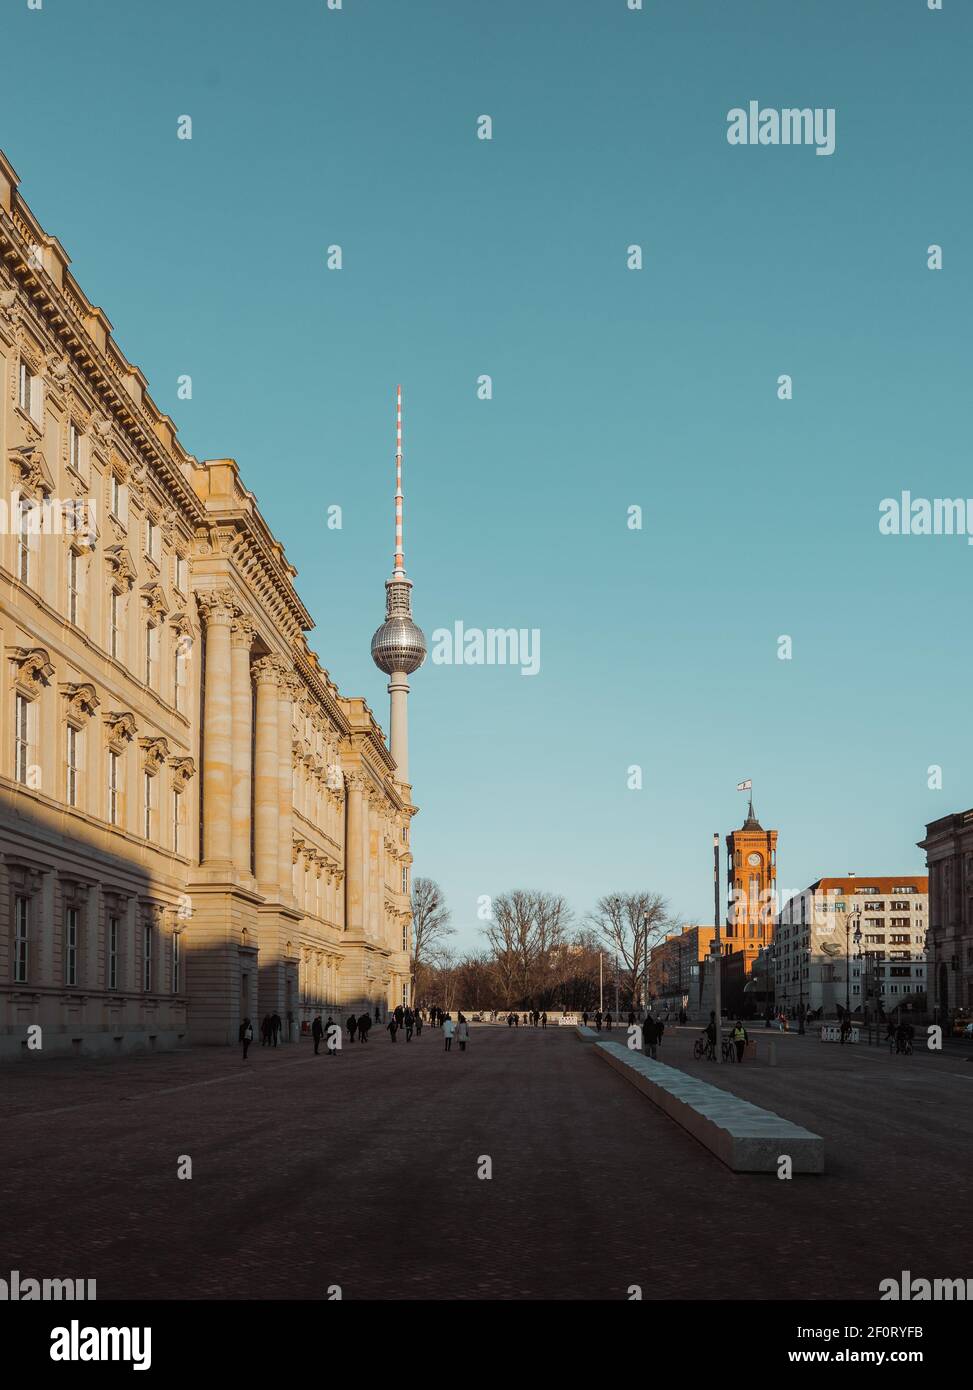 BERLIN, DEUTSCHLAND - 3. März 2020: Blick auf das Königsschloss auch bekannt als Stadtschloss und Humboldt Forum mit Berliner Fernsehturm in der Nachmittagssonne Stockfoto